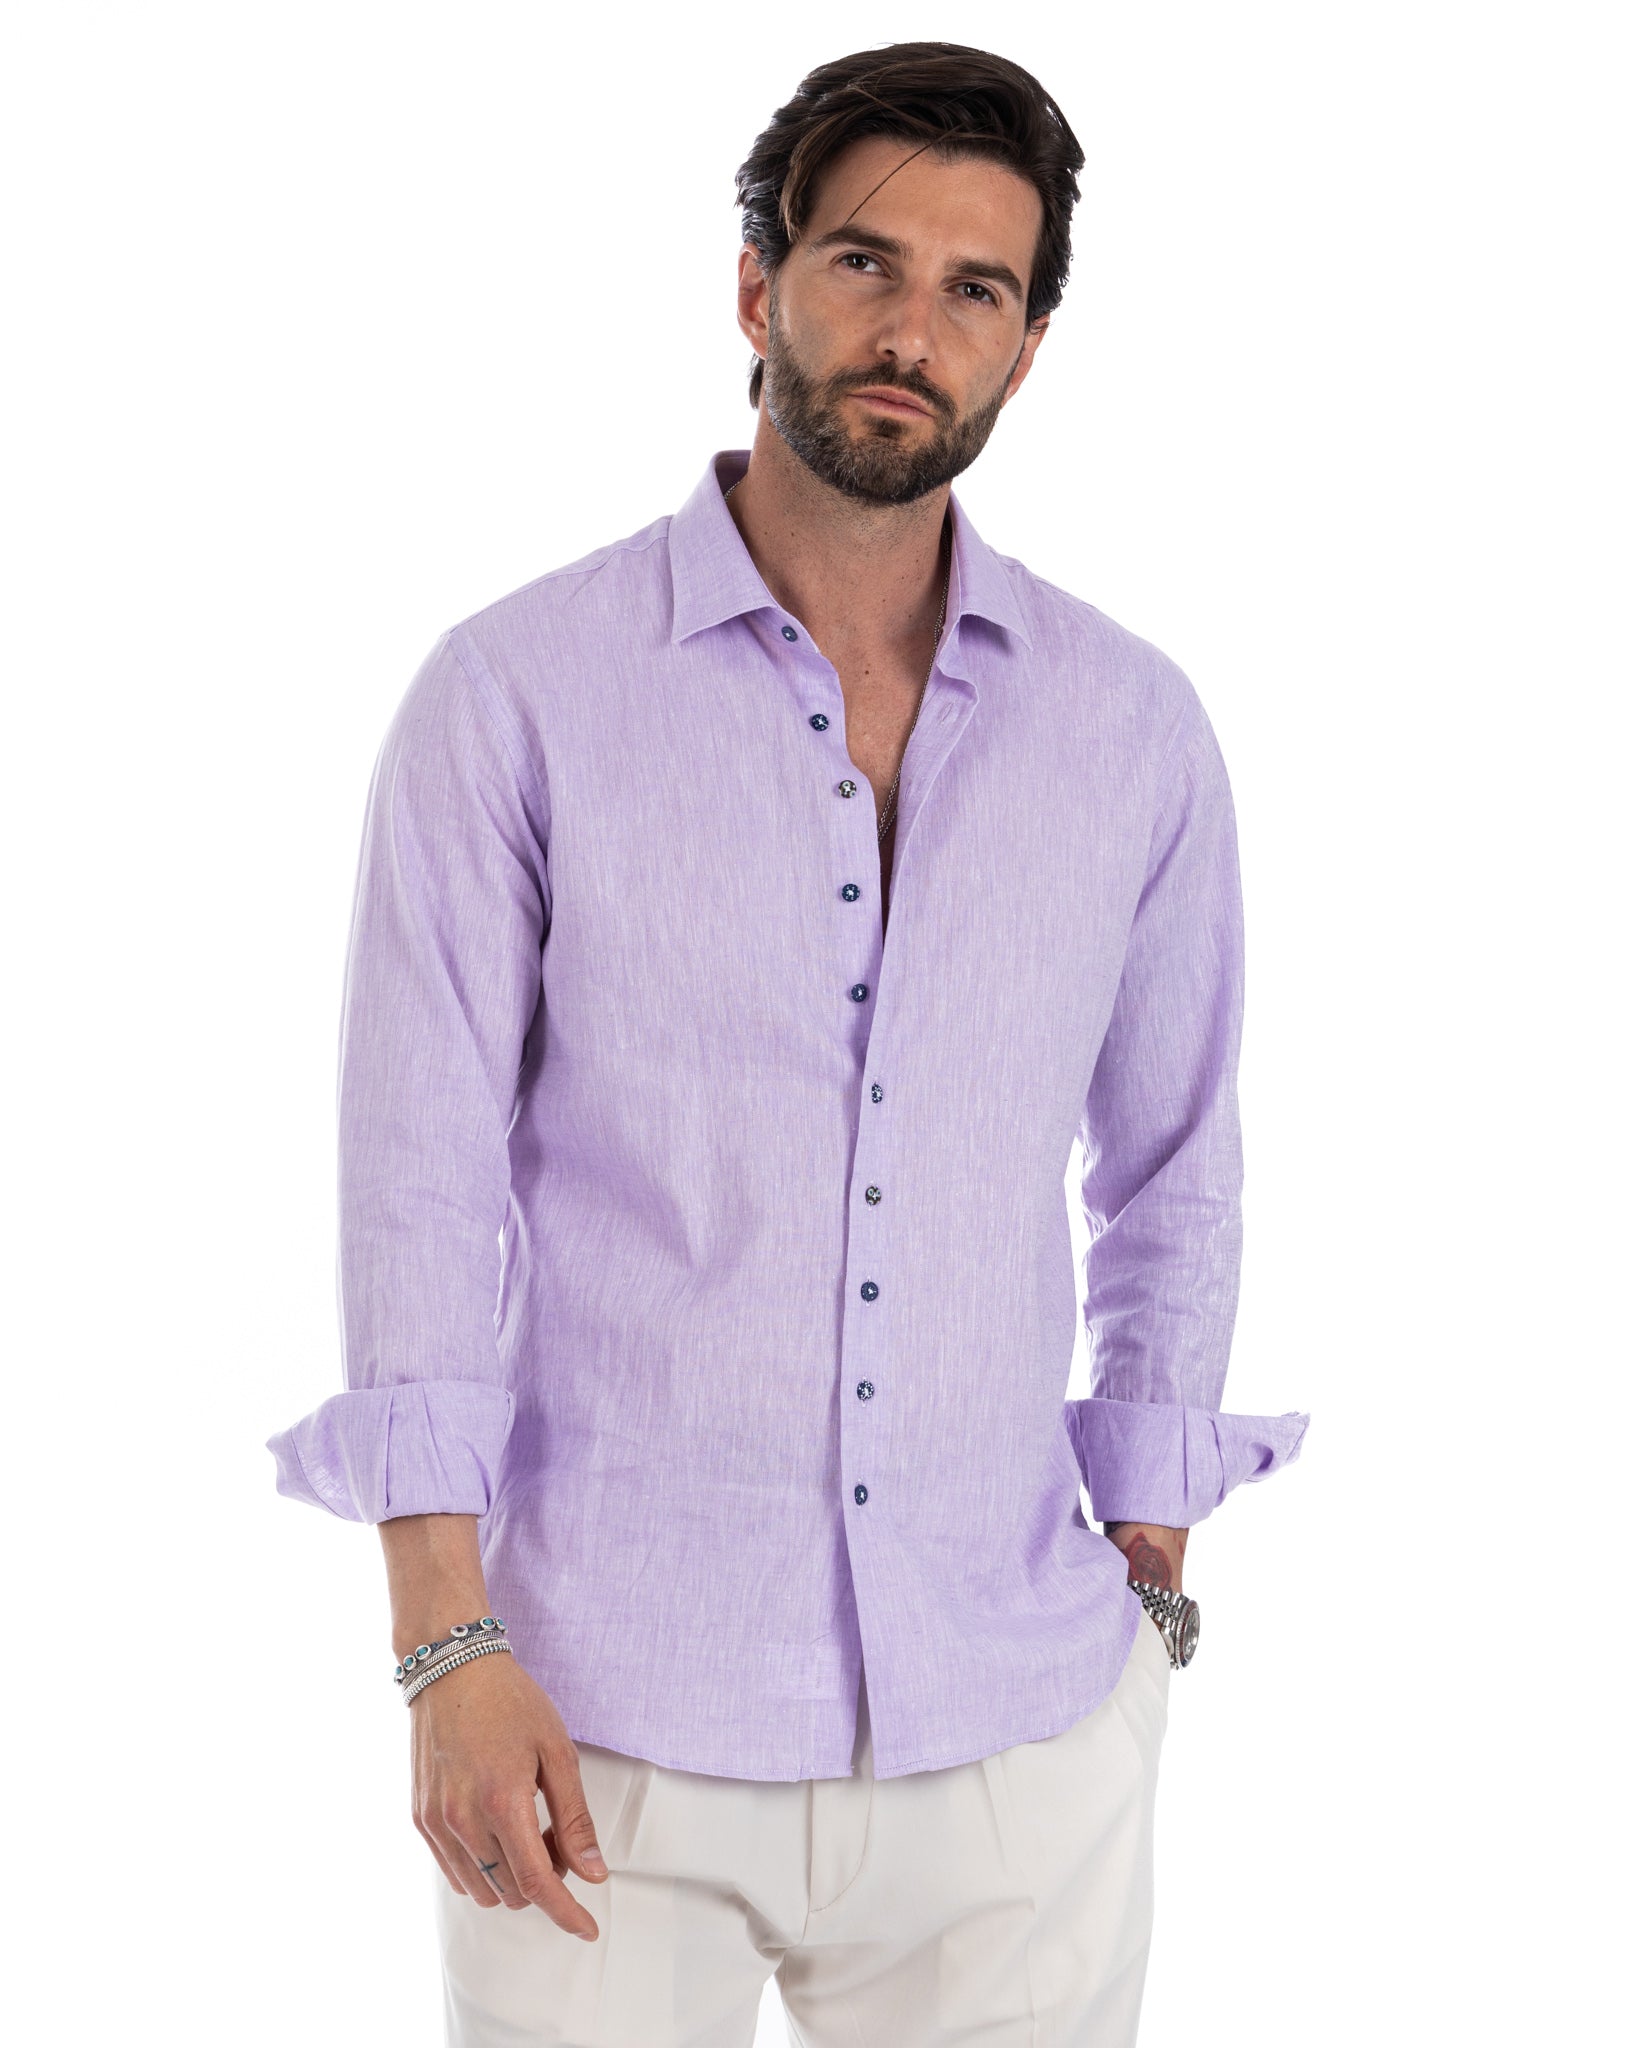 Praiano - lilac linen French shirt